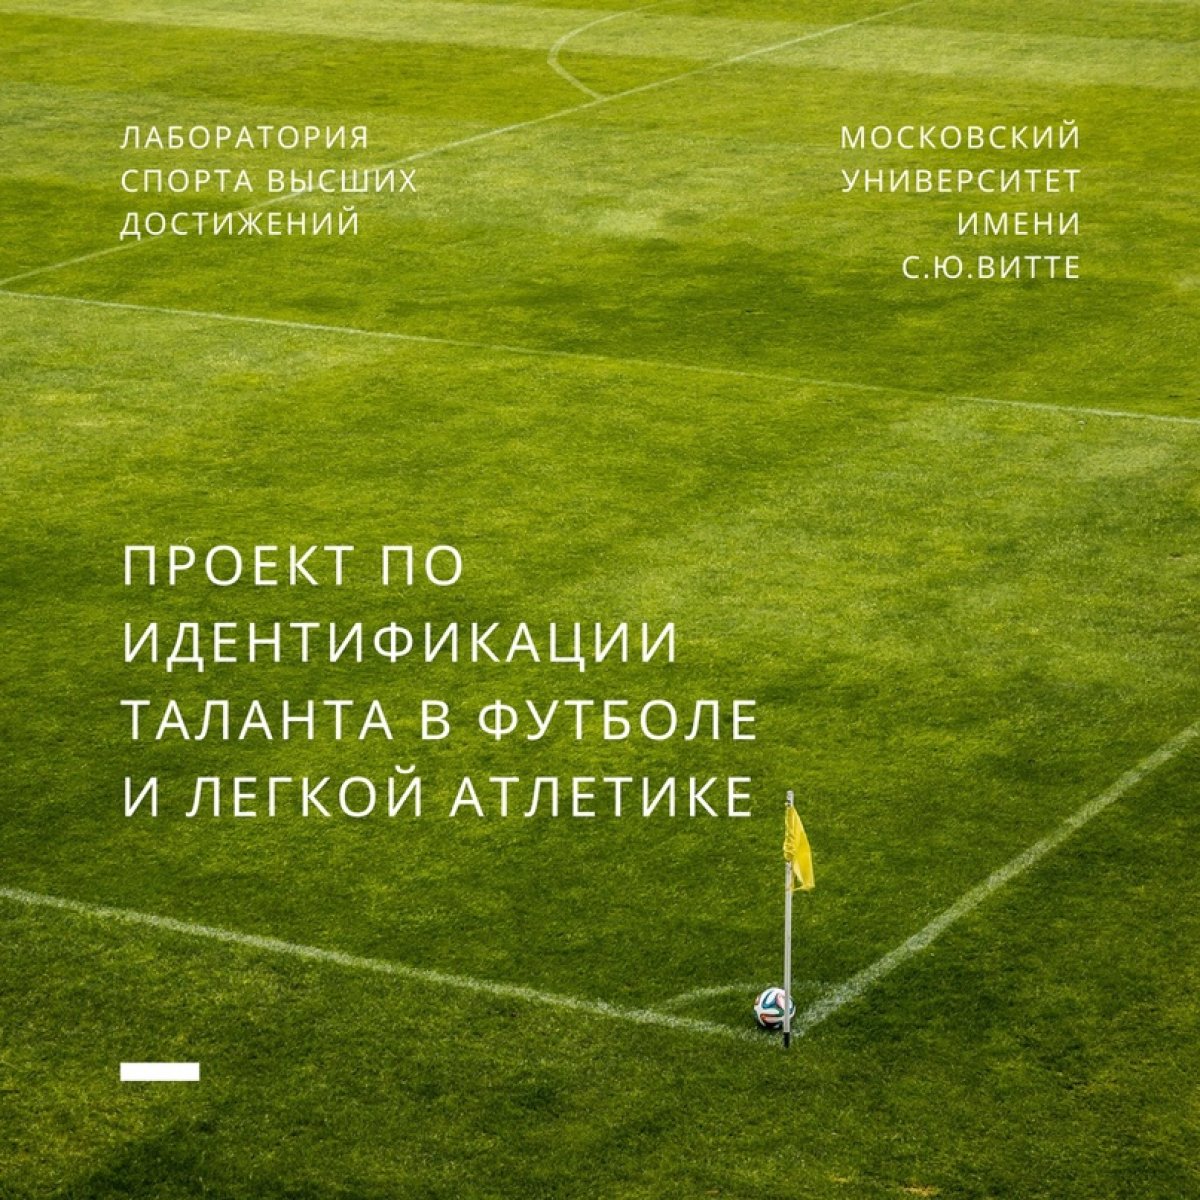 Лаборатория спорта высших достижений Московского университета им.С.Ю.Витте в августе 2020 года запустила проект по идентификации таланта в футболе и легкой атлетике